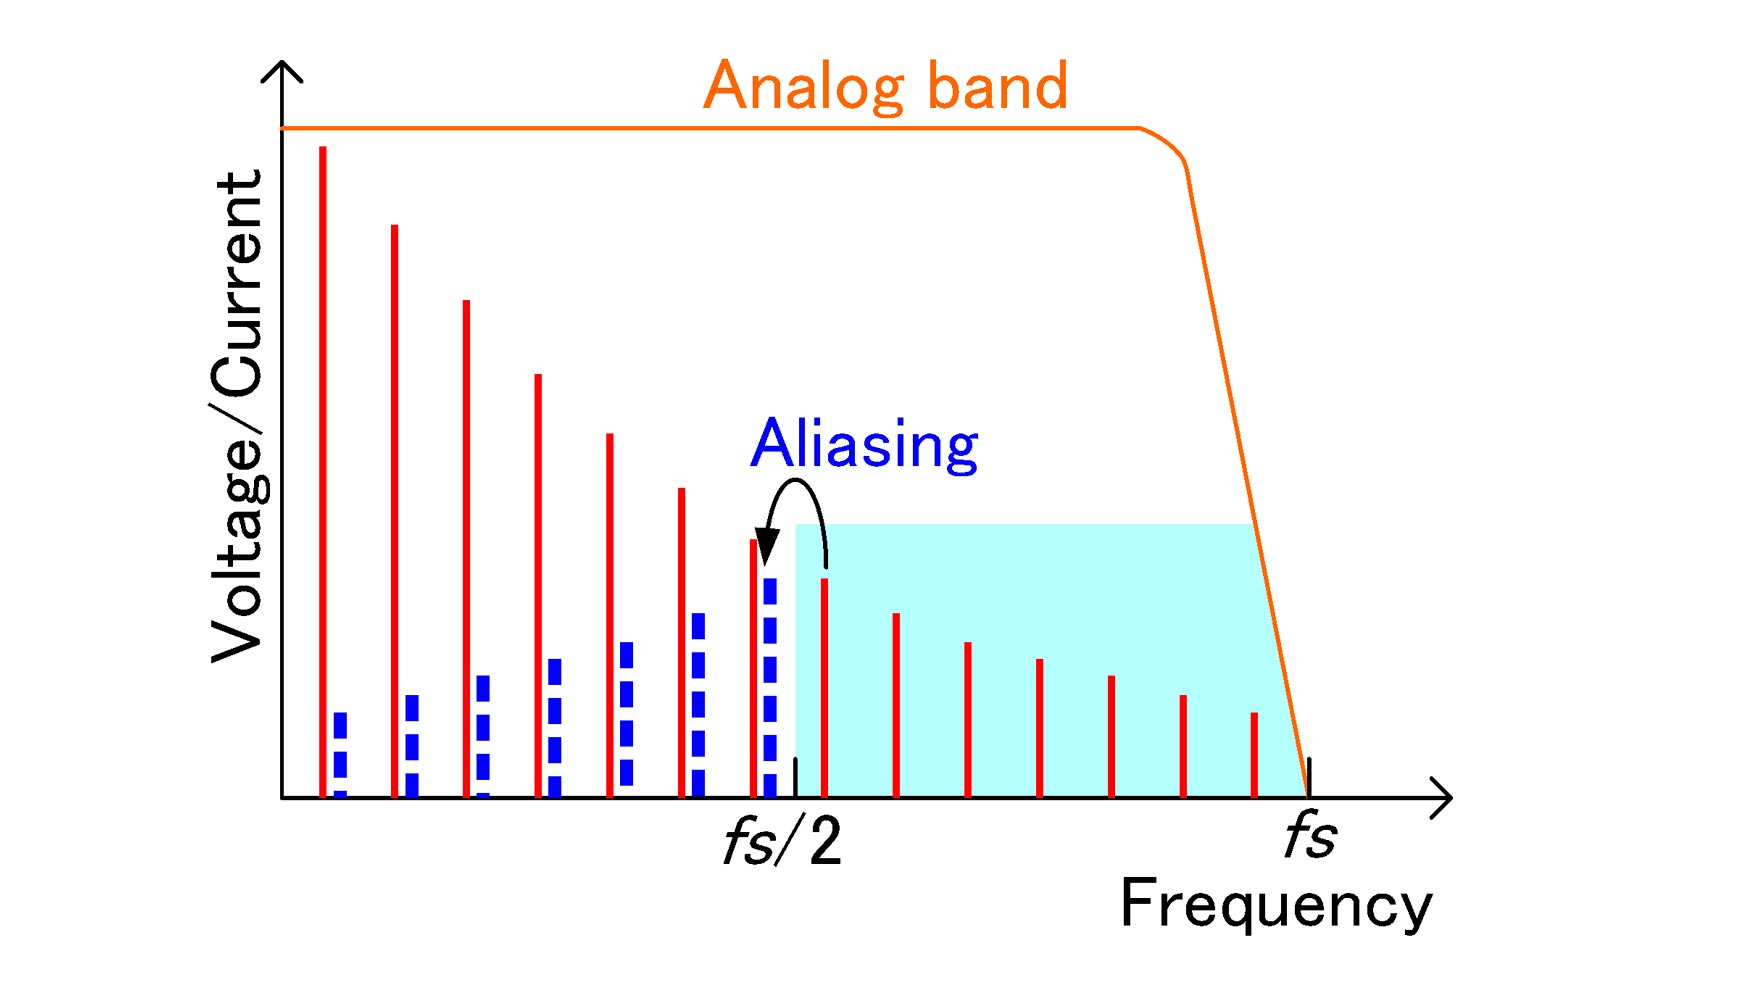 Figura 8. Relacin entre la banda analgica y la frecuencia de muestreo en un analizador de potencia estndar